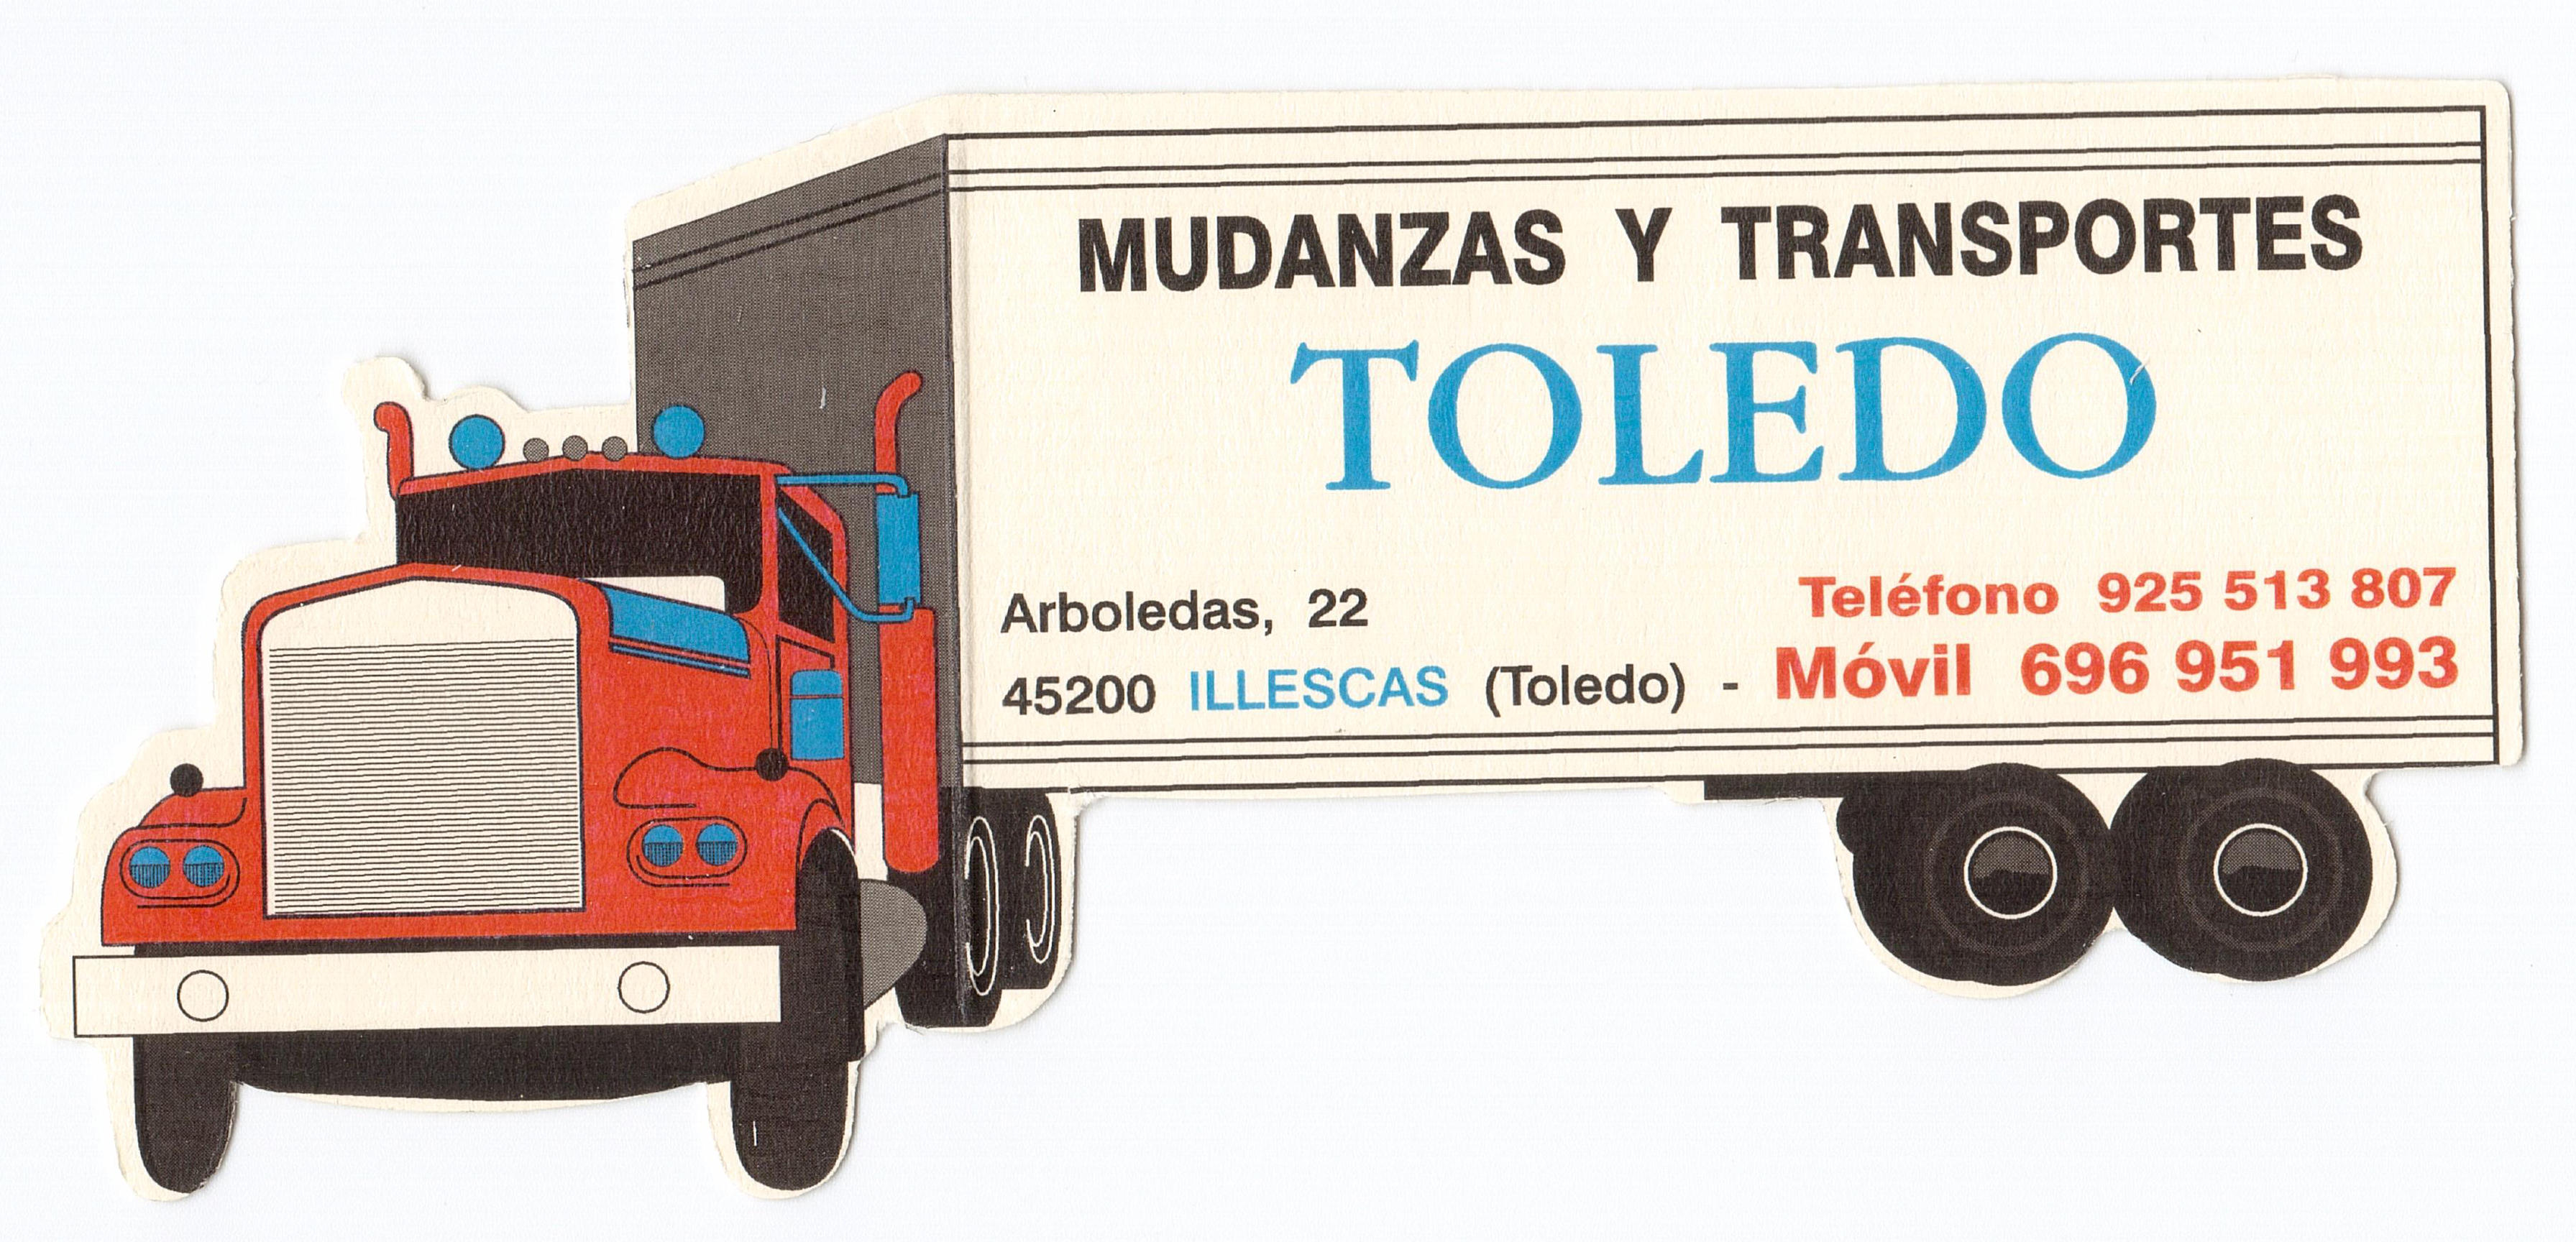 Images Mudanzas y Transportes Toledo